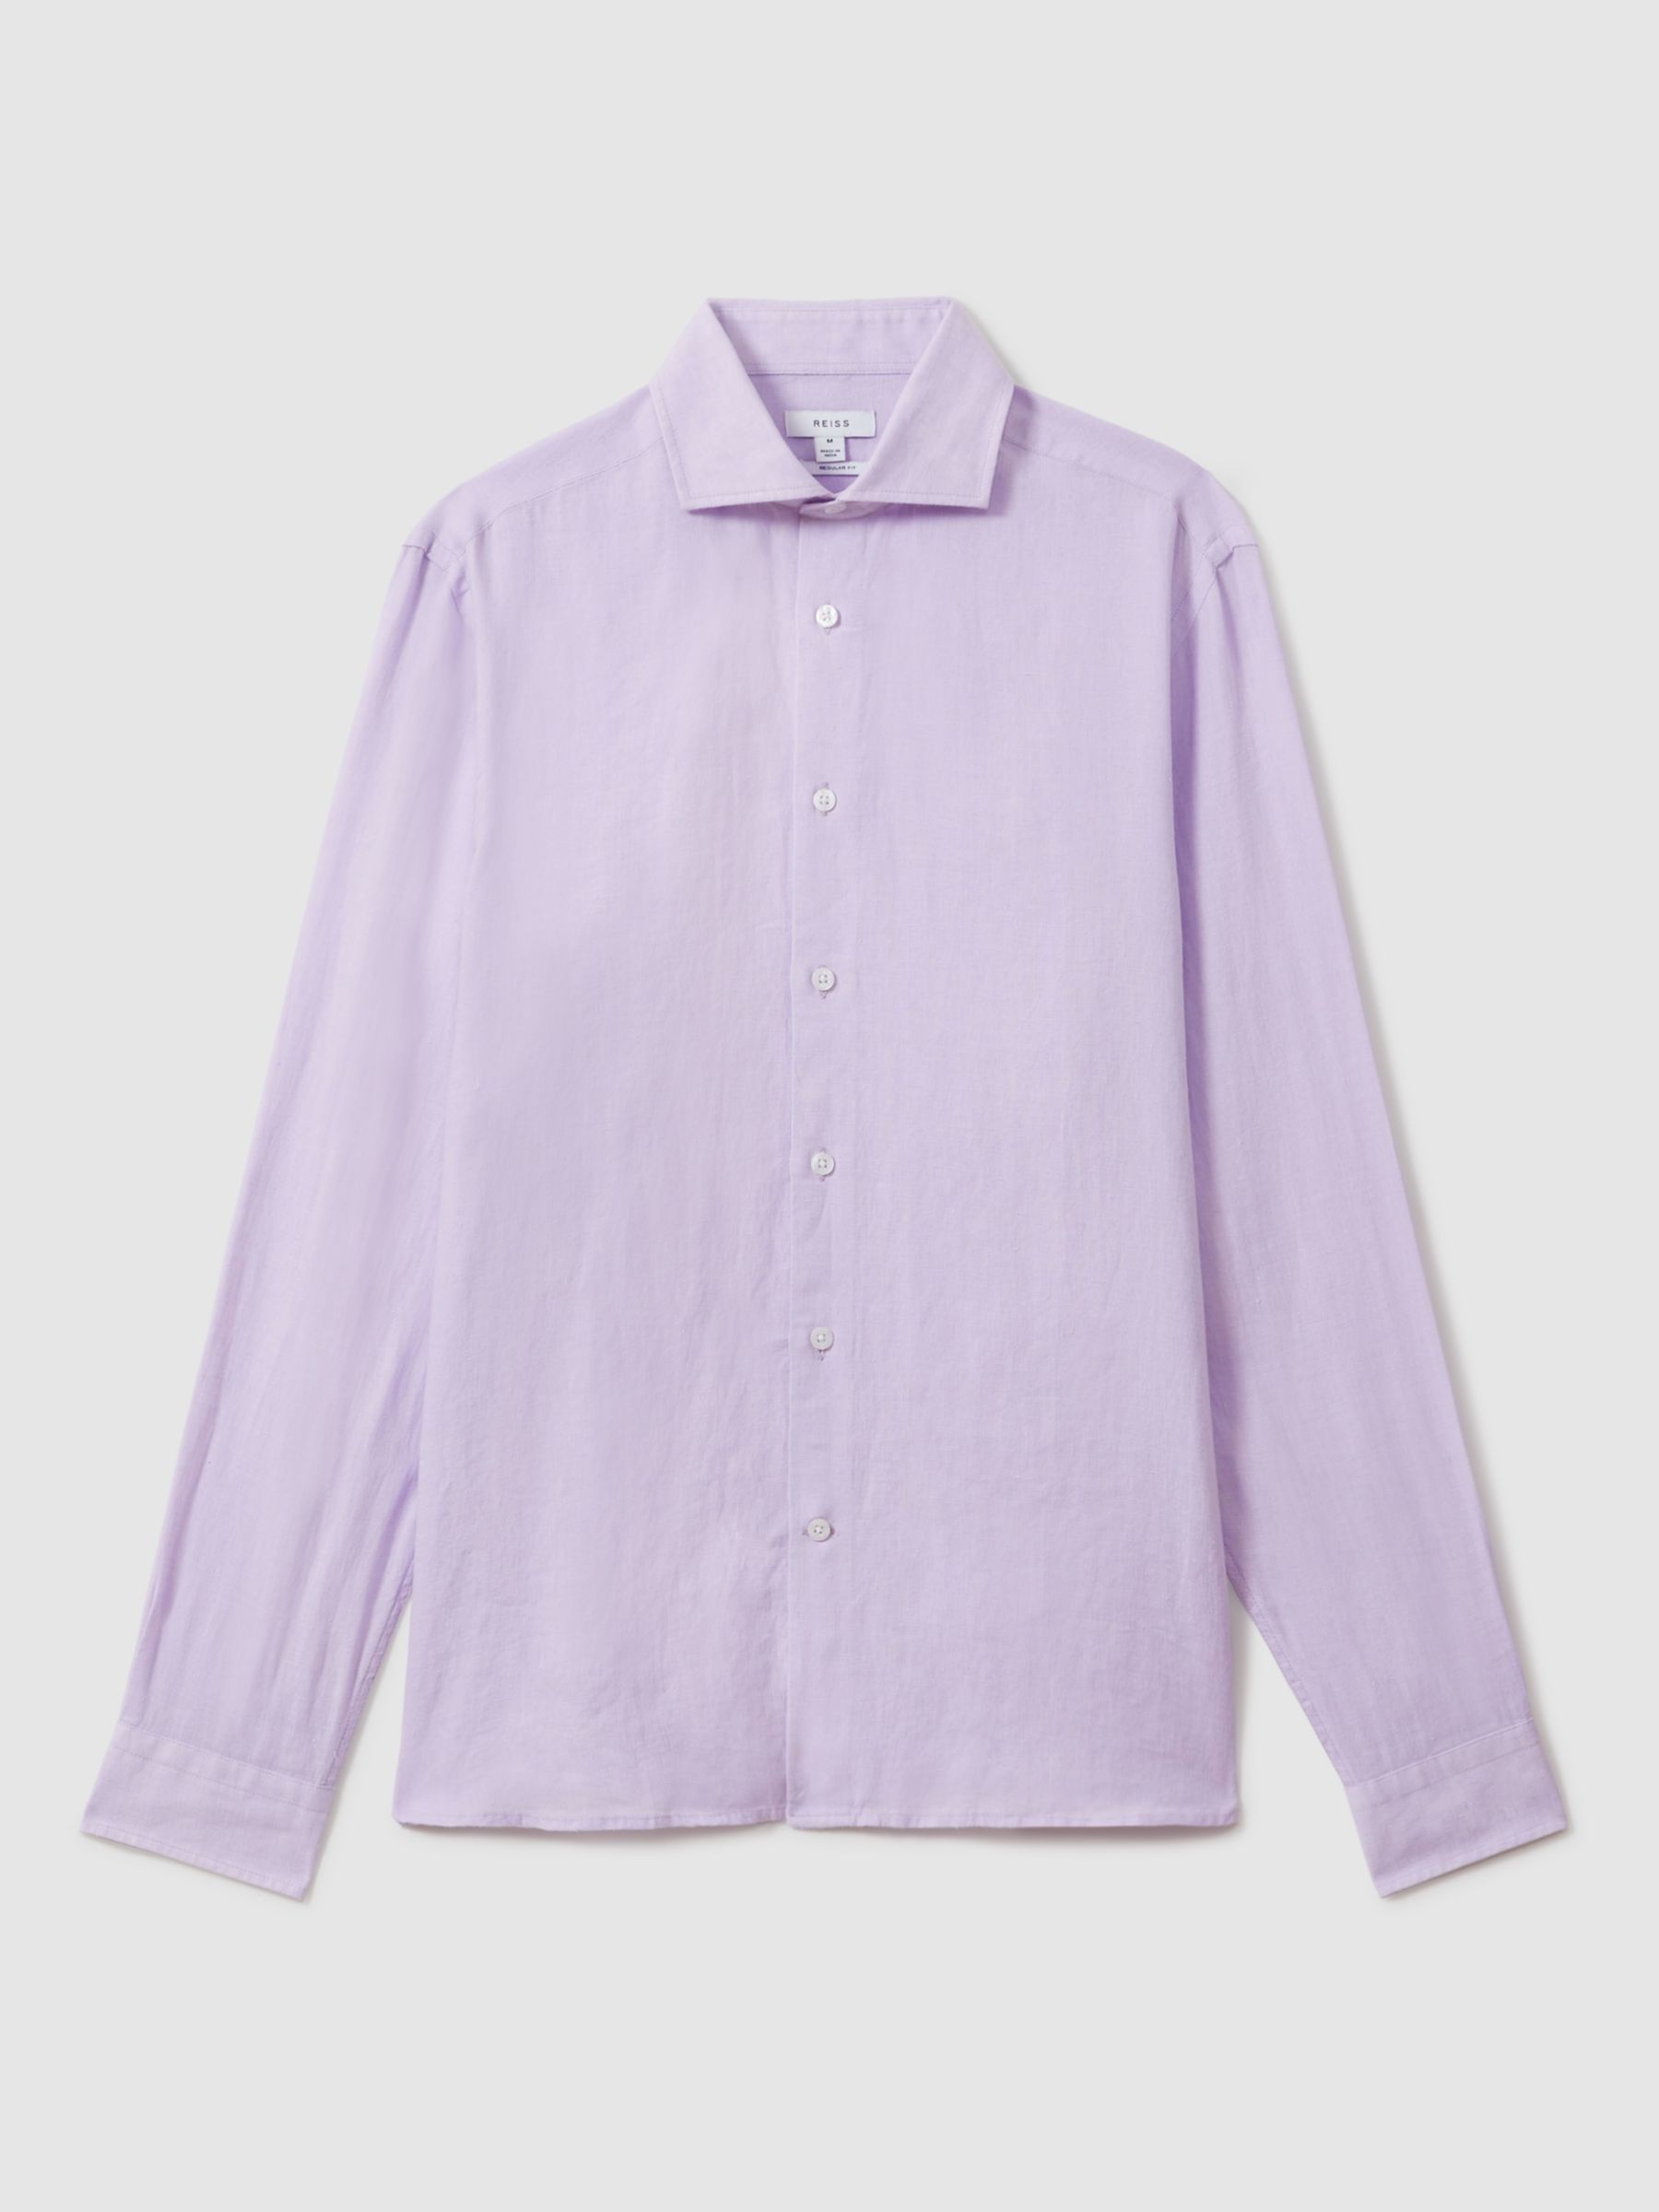 Reiss Ruban Regular Fit Linen Shirt, Orchid, XS